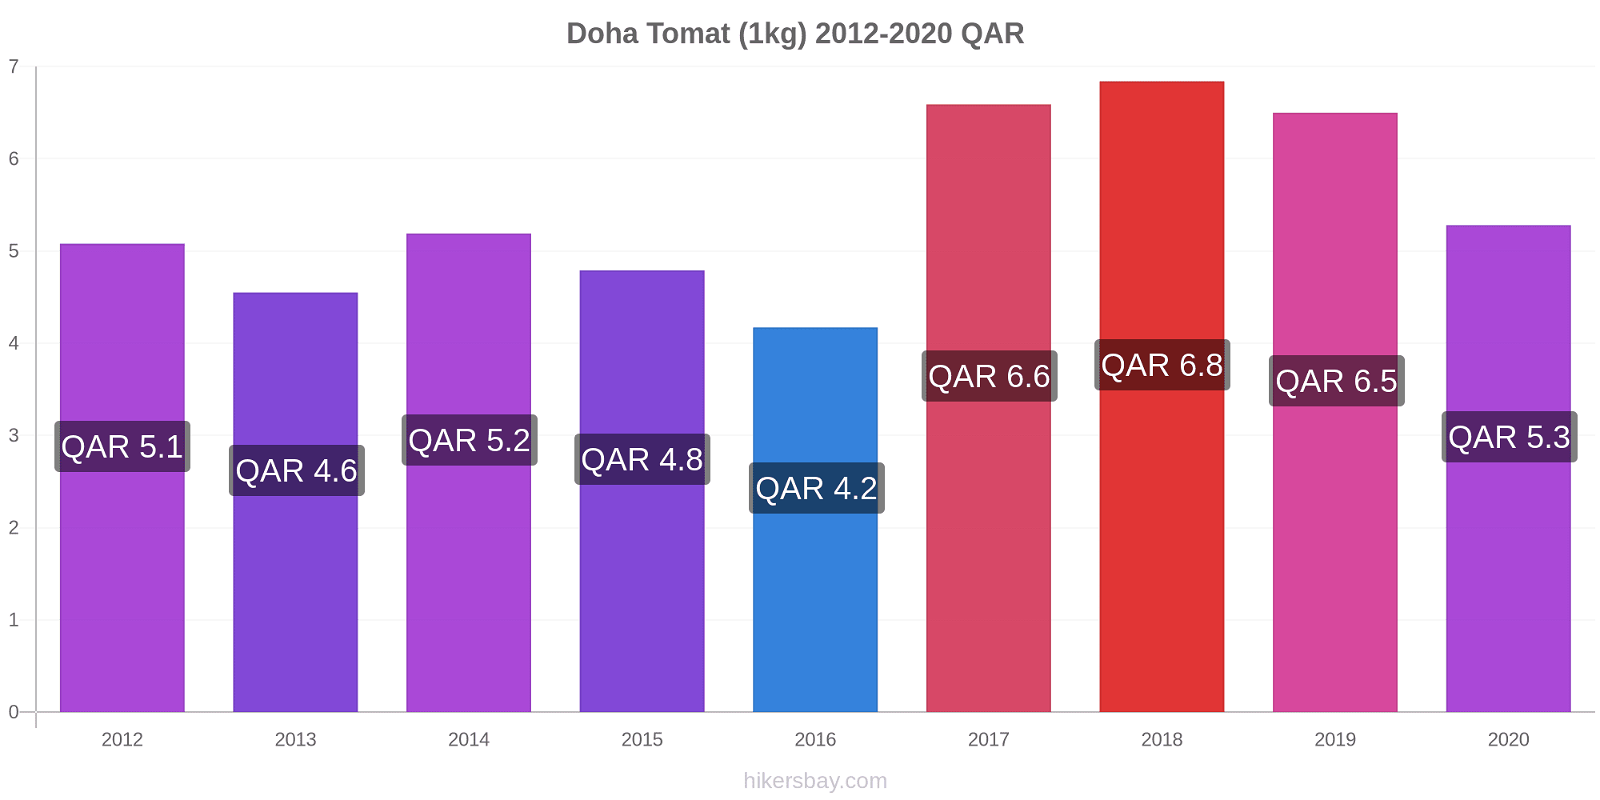 Doha perubahan harga Tomat (1kg) hikersbay.com